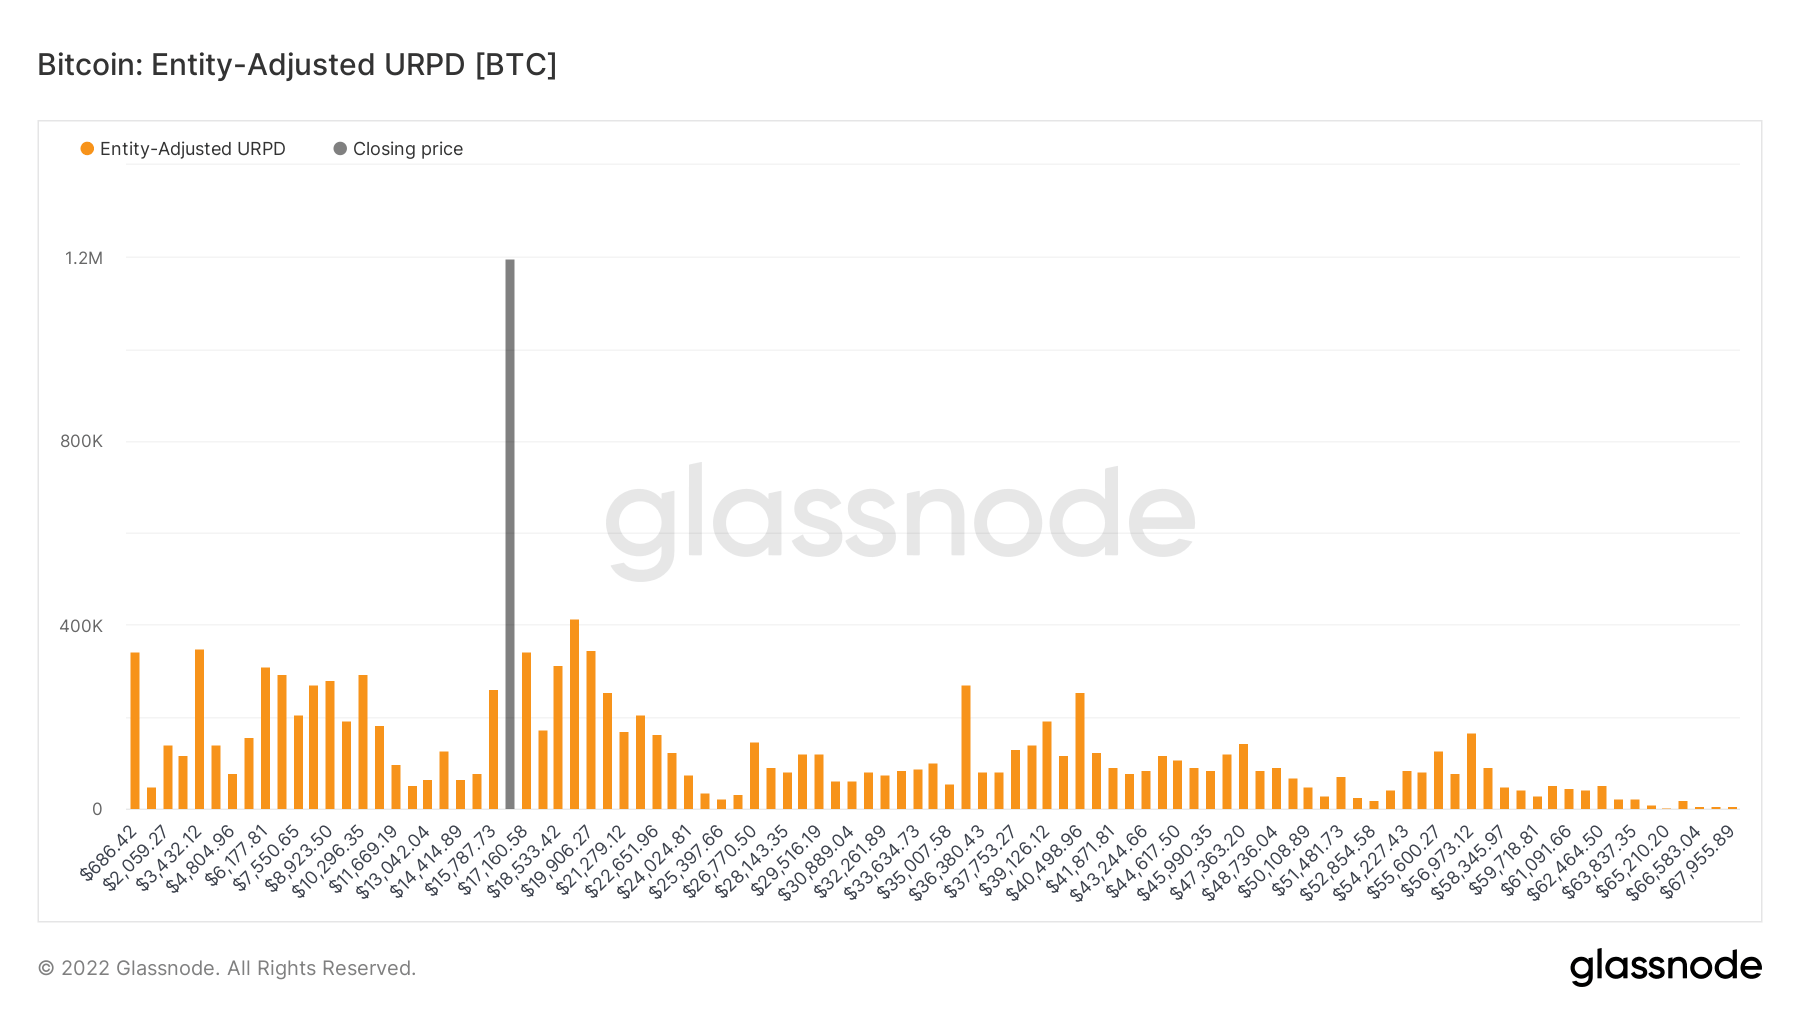 Distribuição de preço realizado UTXO ajustado pela entidade de BTC.  Fonte: Glassnode